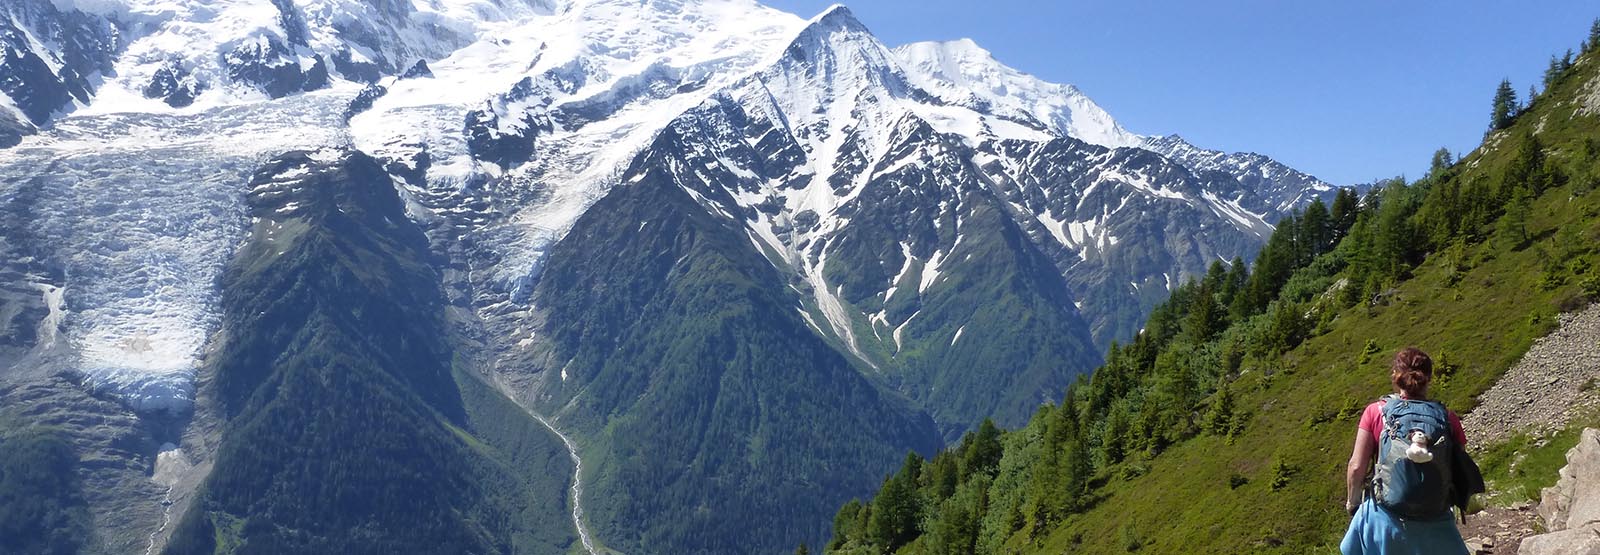 Tour du Mont Blanc without a guide : 6 secret tips